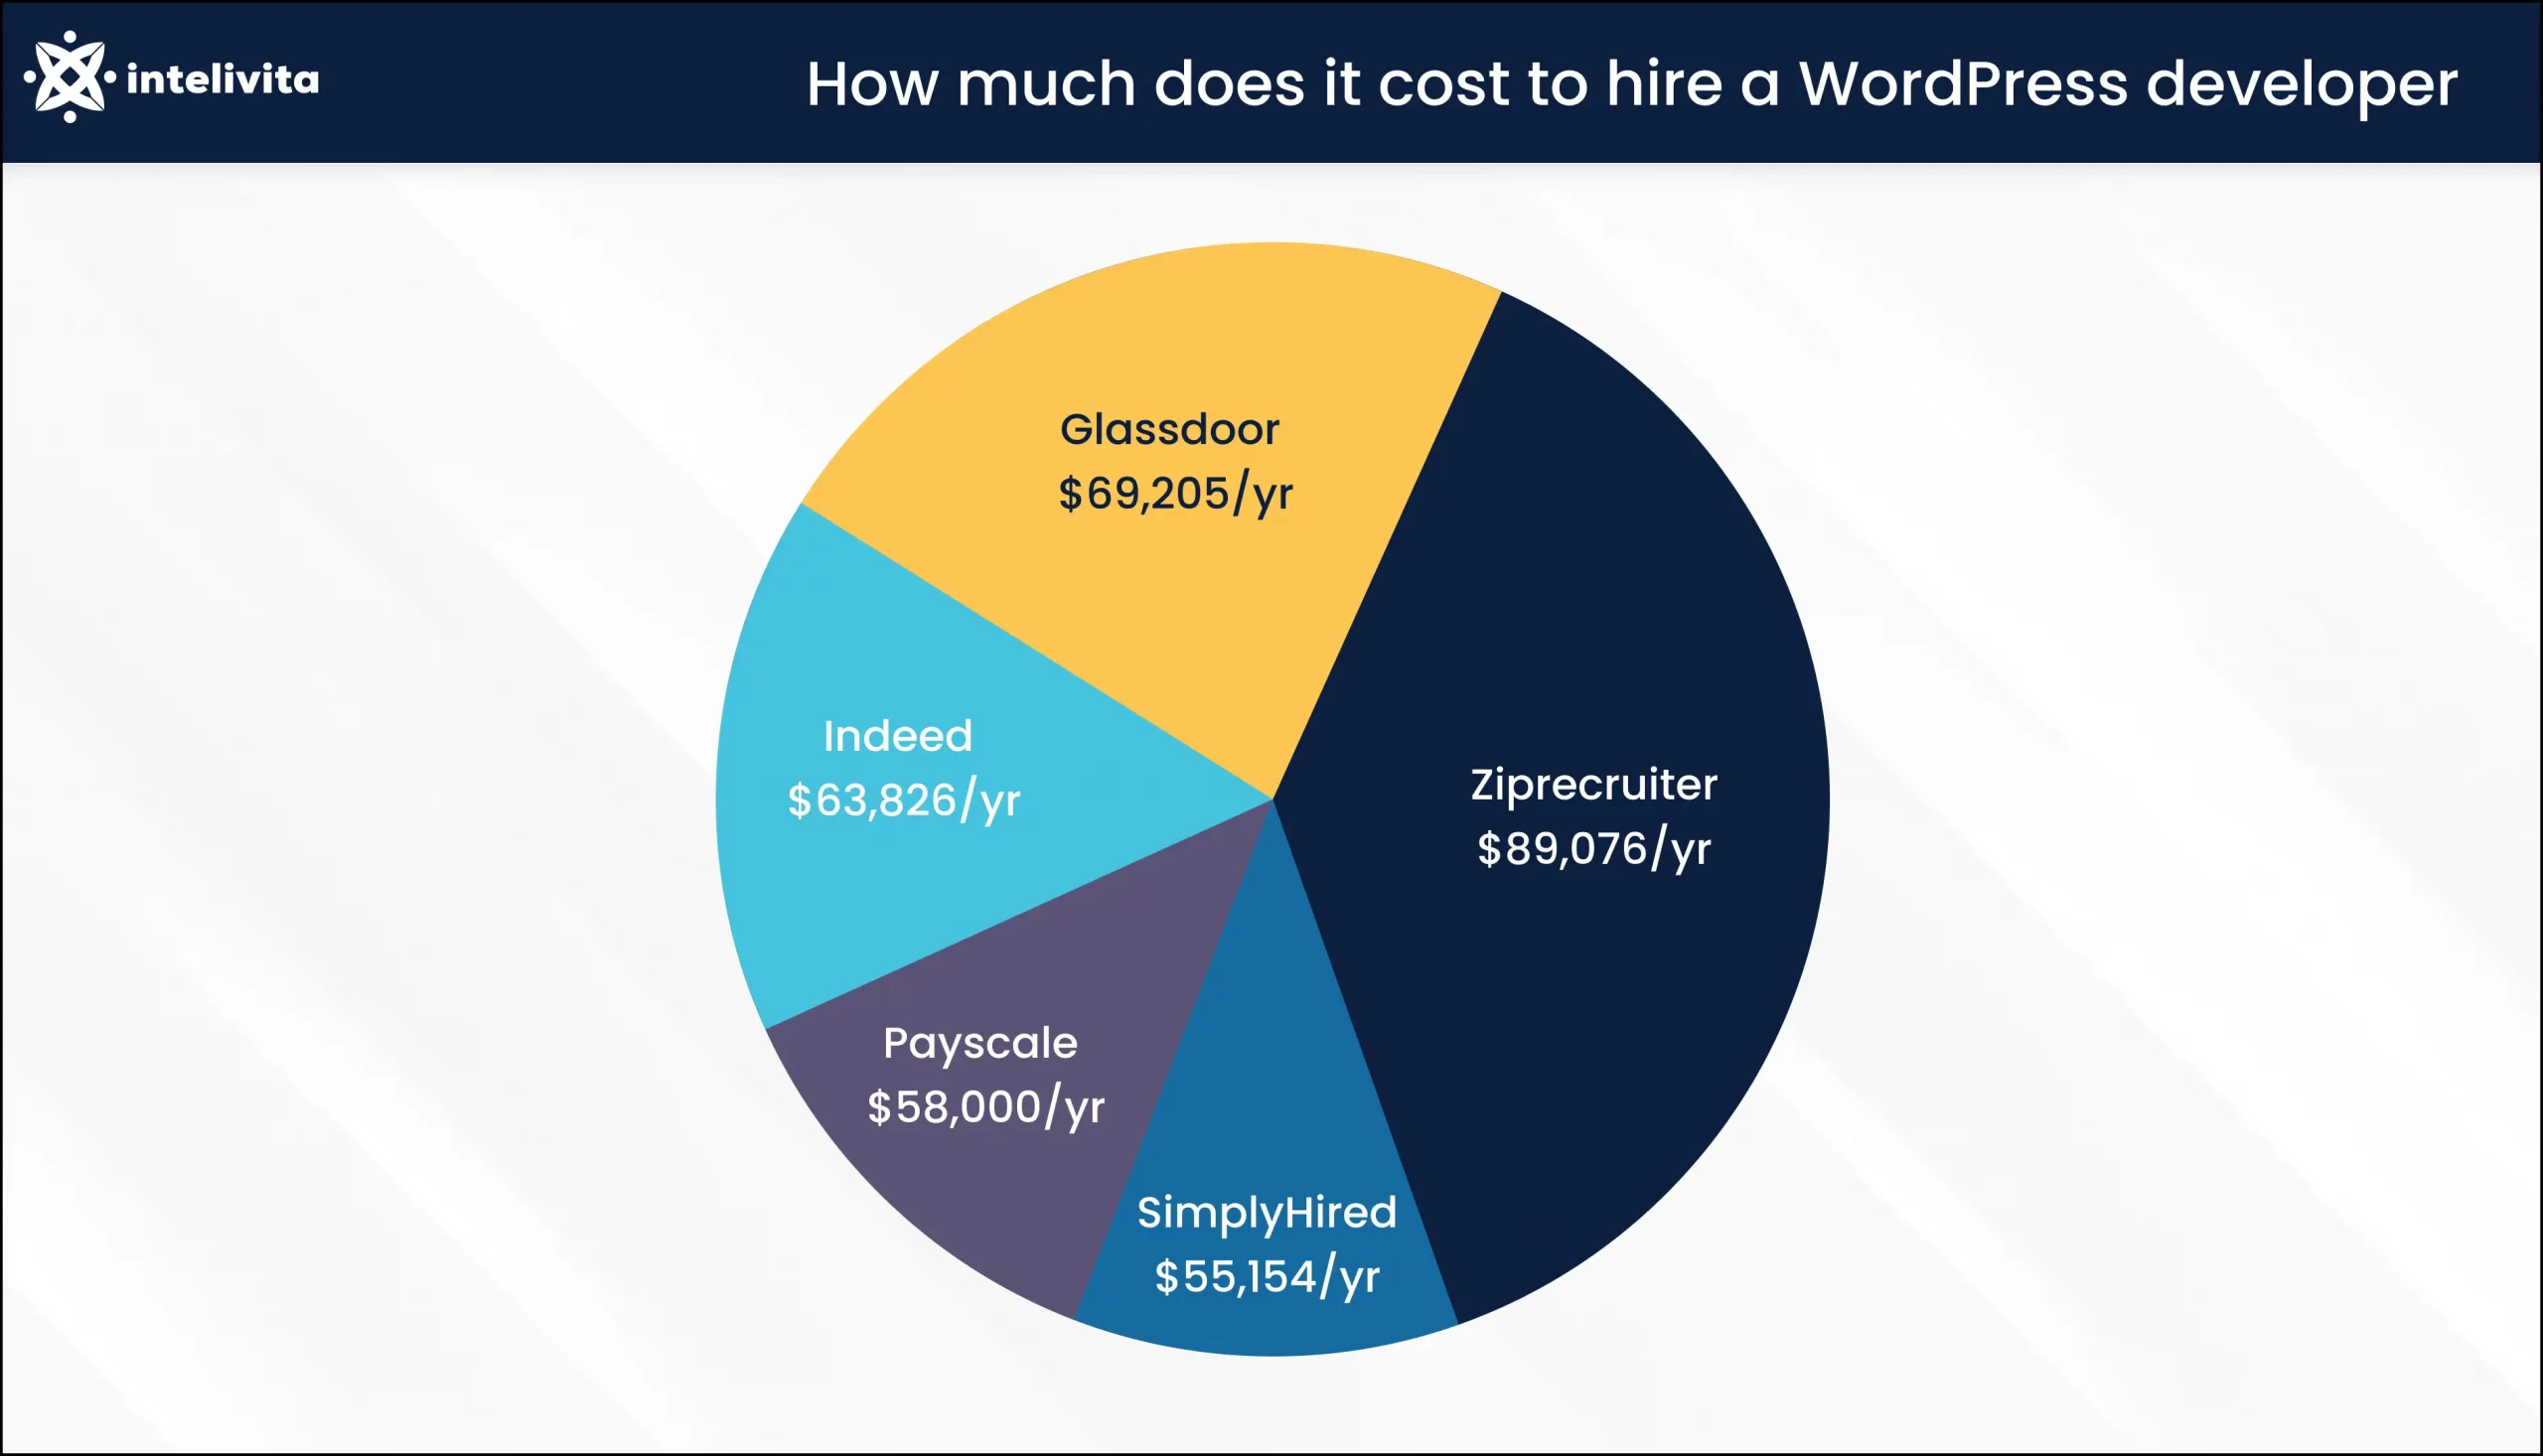 Das Bild zeigt die Kosten für die Einstellung eines WordPress-Entwicklers pro Jahr auf verschiedenen Einstellungsplattformen.